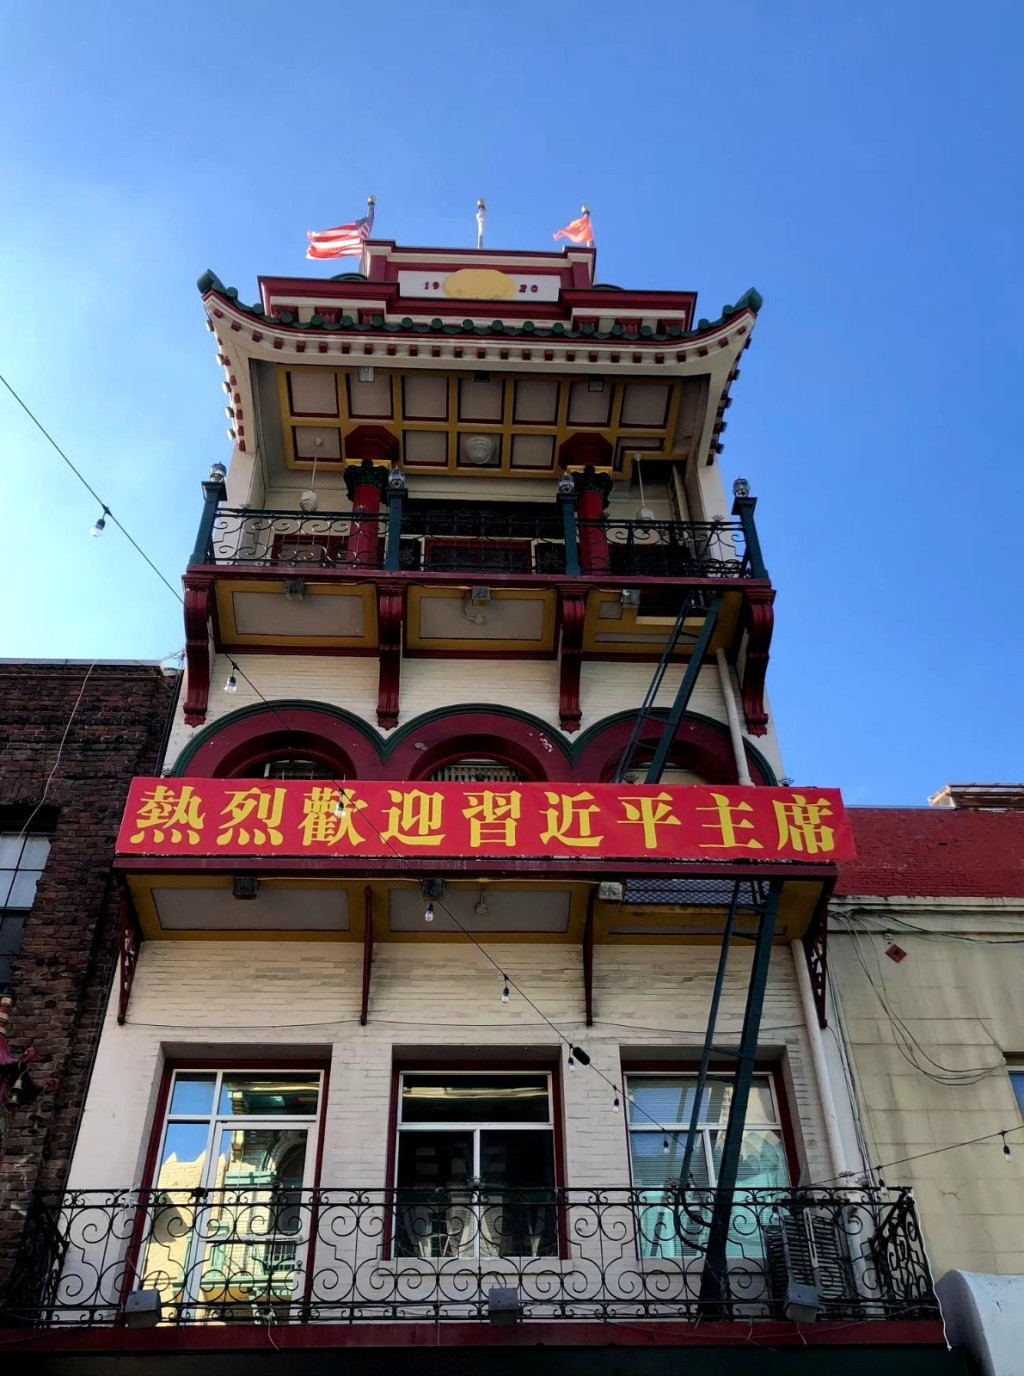 三藩市唐人街到处挂起「热烈欢迎习近平主席」的醒目横额。 微博